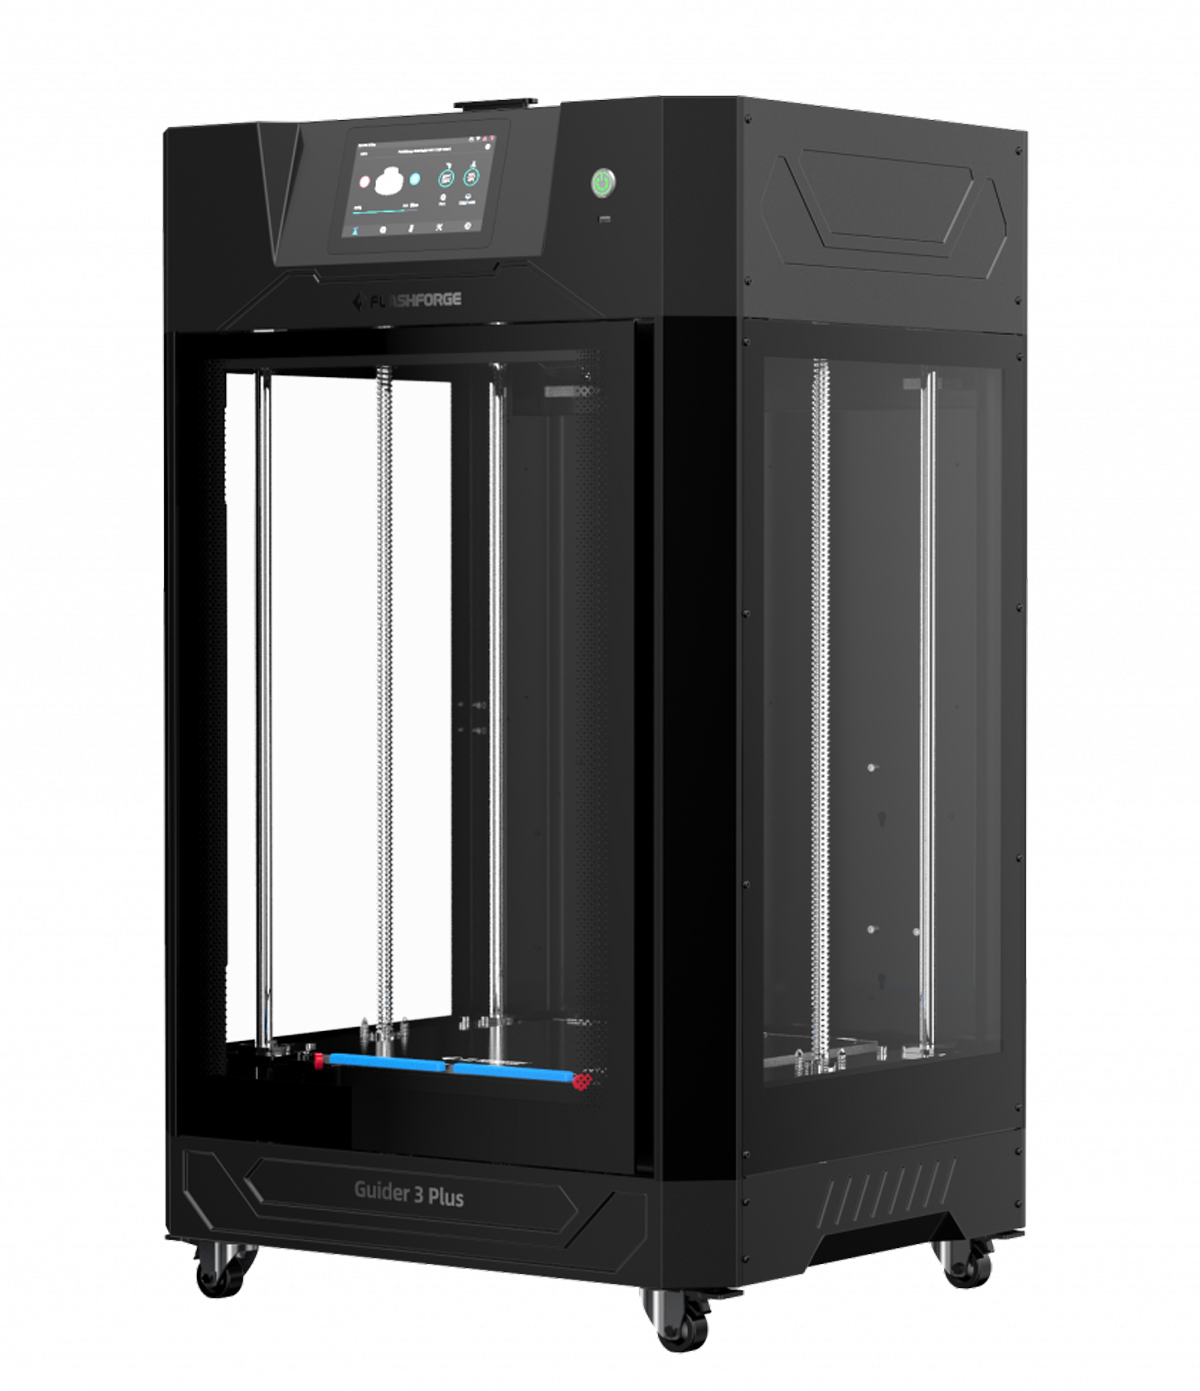 Pince multiprise Machines-3D Pince_multiprise : Machines-3D, N°1  distributeur europeen pour meilleures imprimantes 3D, scanners 3D,  équipement Fablab, consommables, accessoires